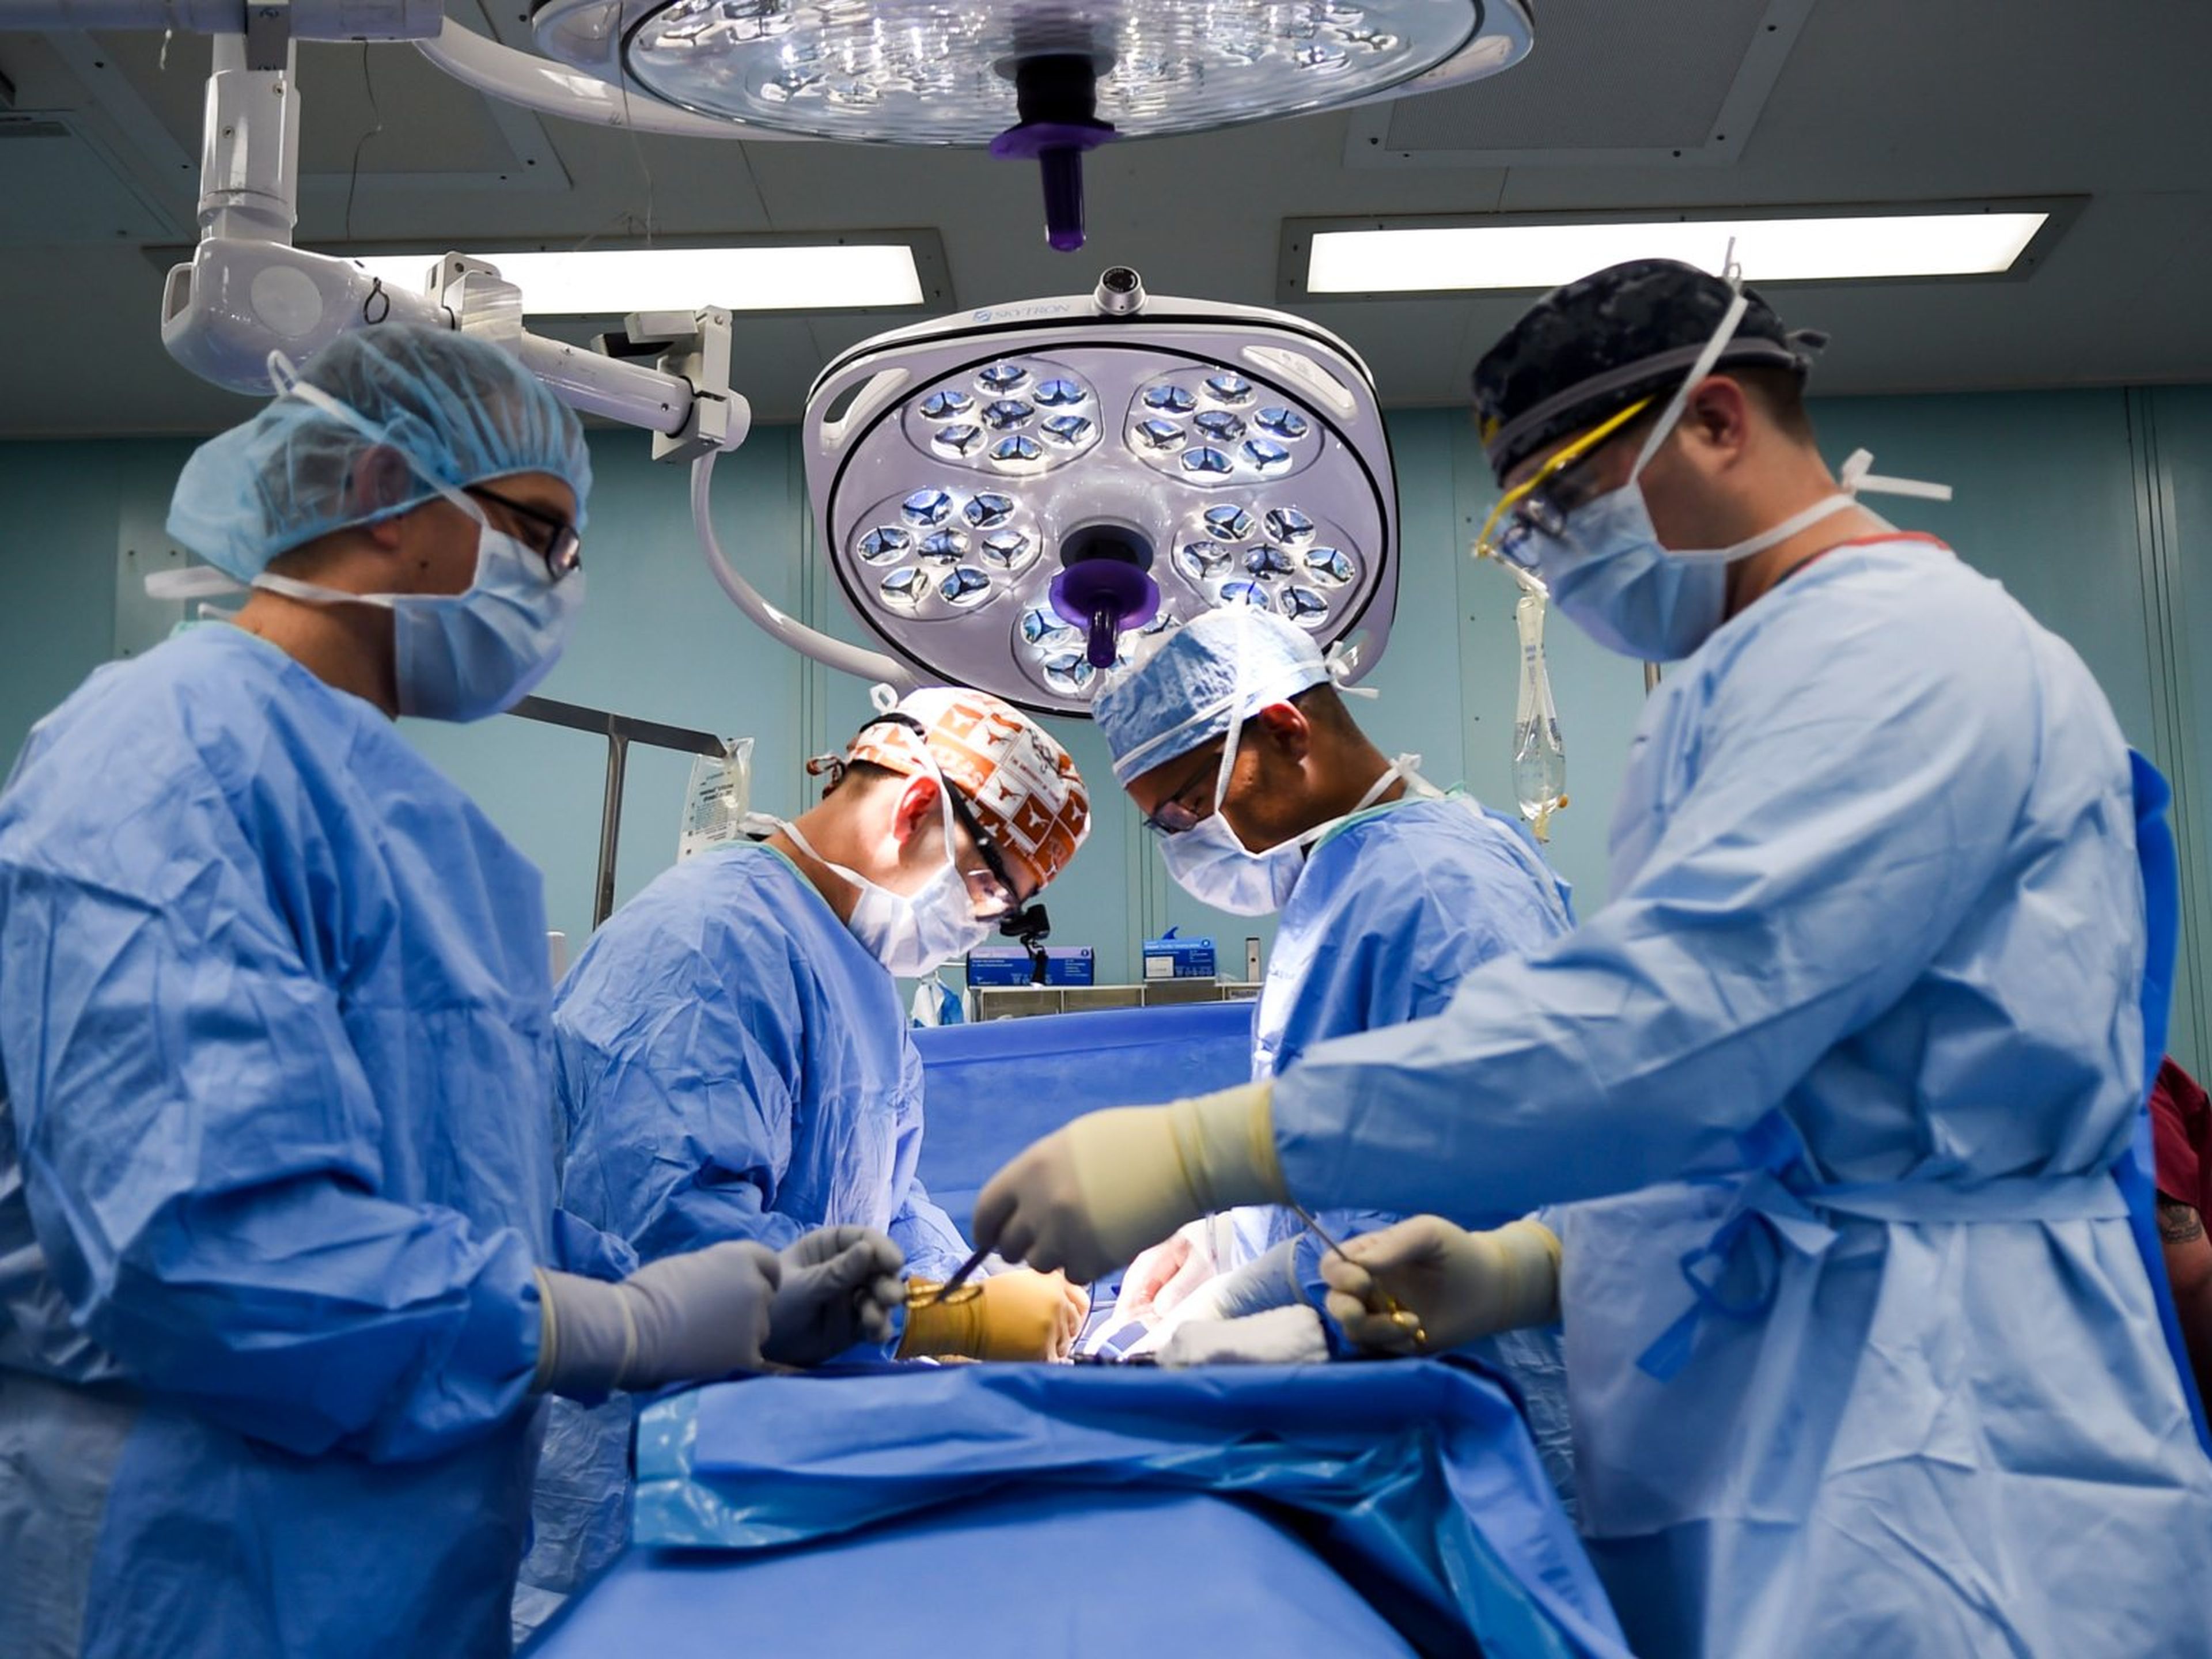 La OMS también afirma que los procedimientos quirúrgicos inseguros causan un millón de muertes durante o inmediatamente después de la cirugía cada año.